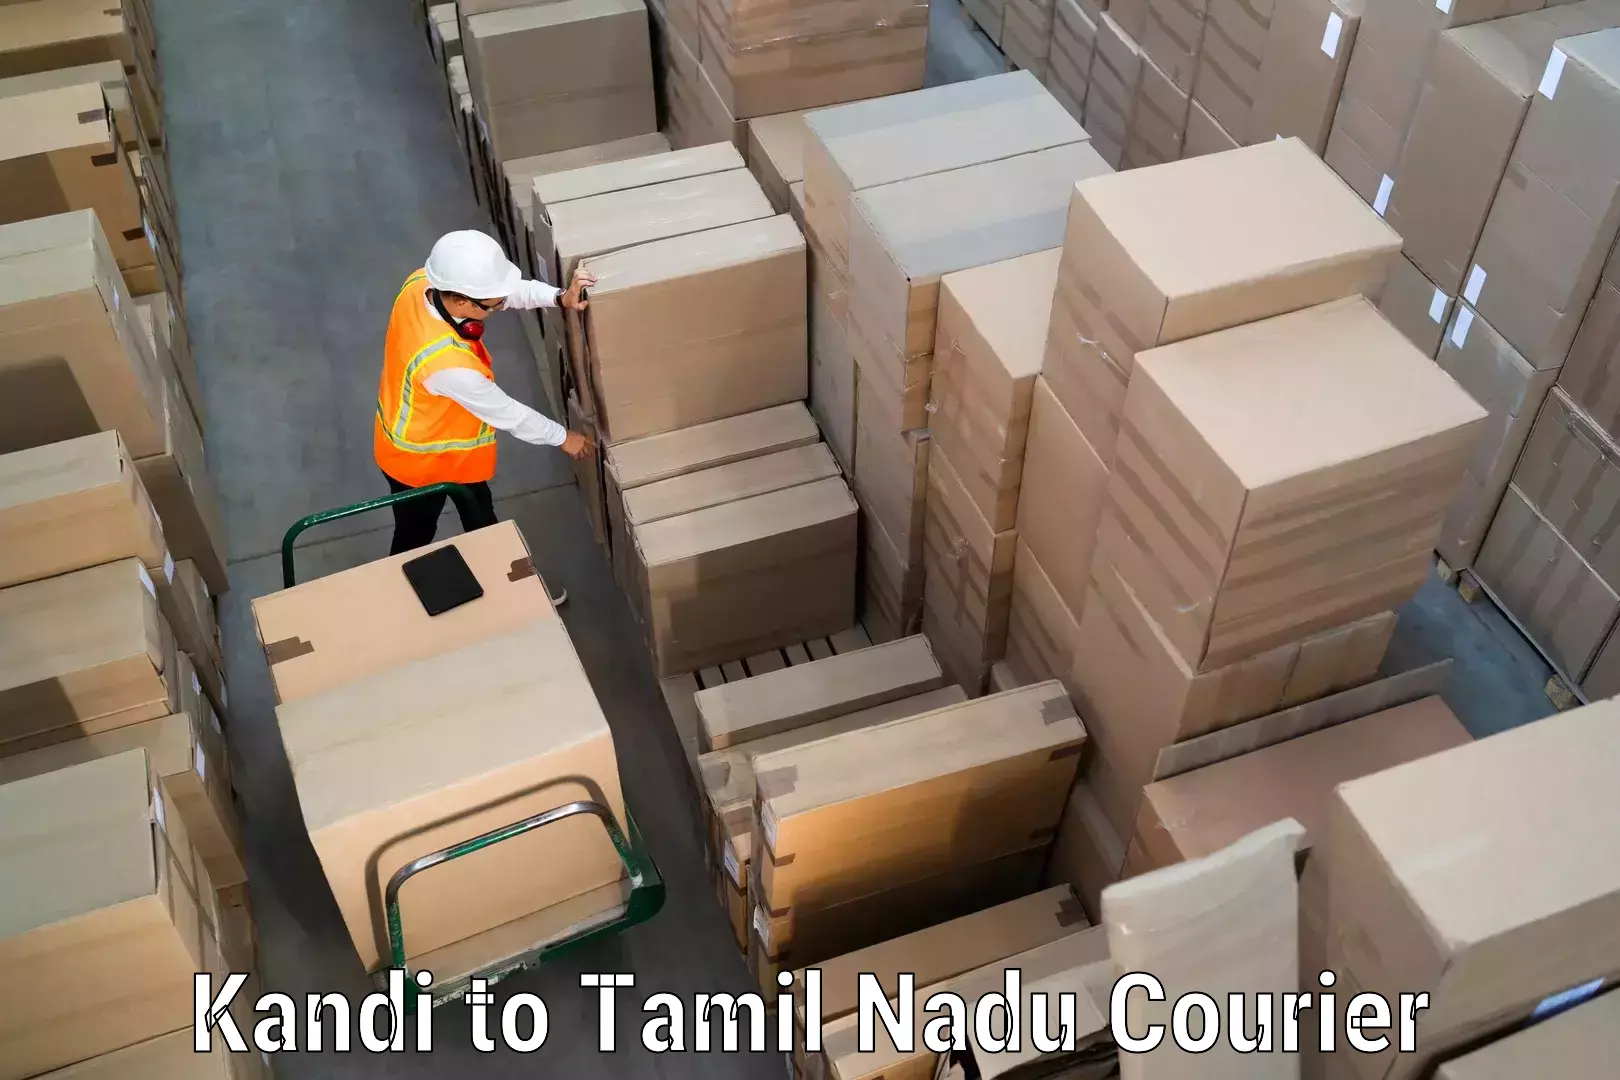 Customized shipping options in Kandi to Padi